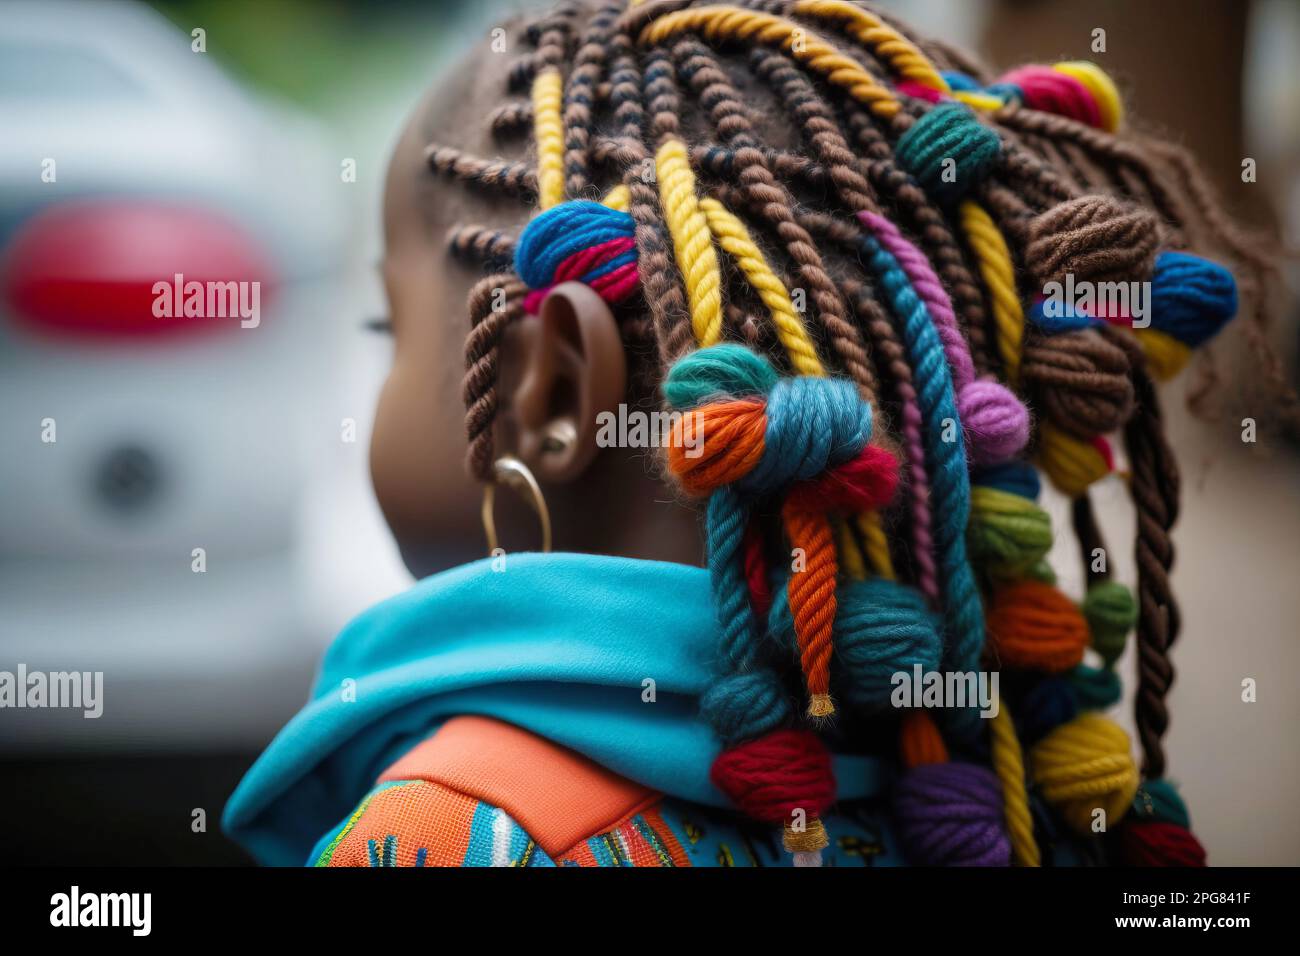 Bambina con trecce zizi in stile afro, vista posteriore. Intelligenza artificiale generativa Foto Stock